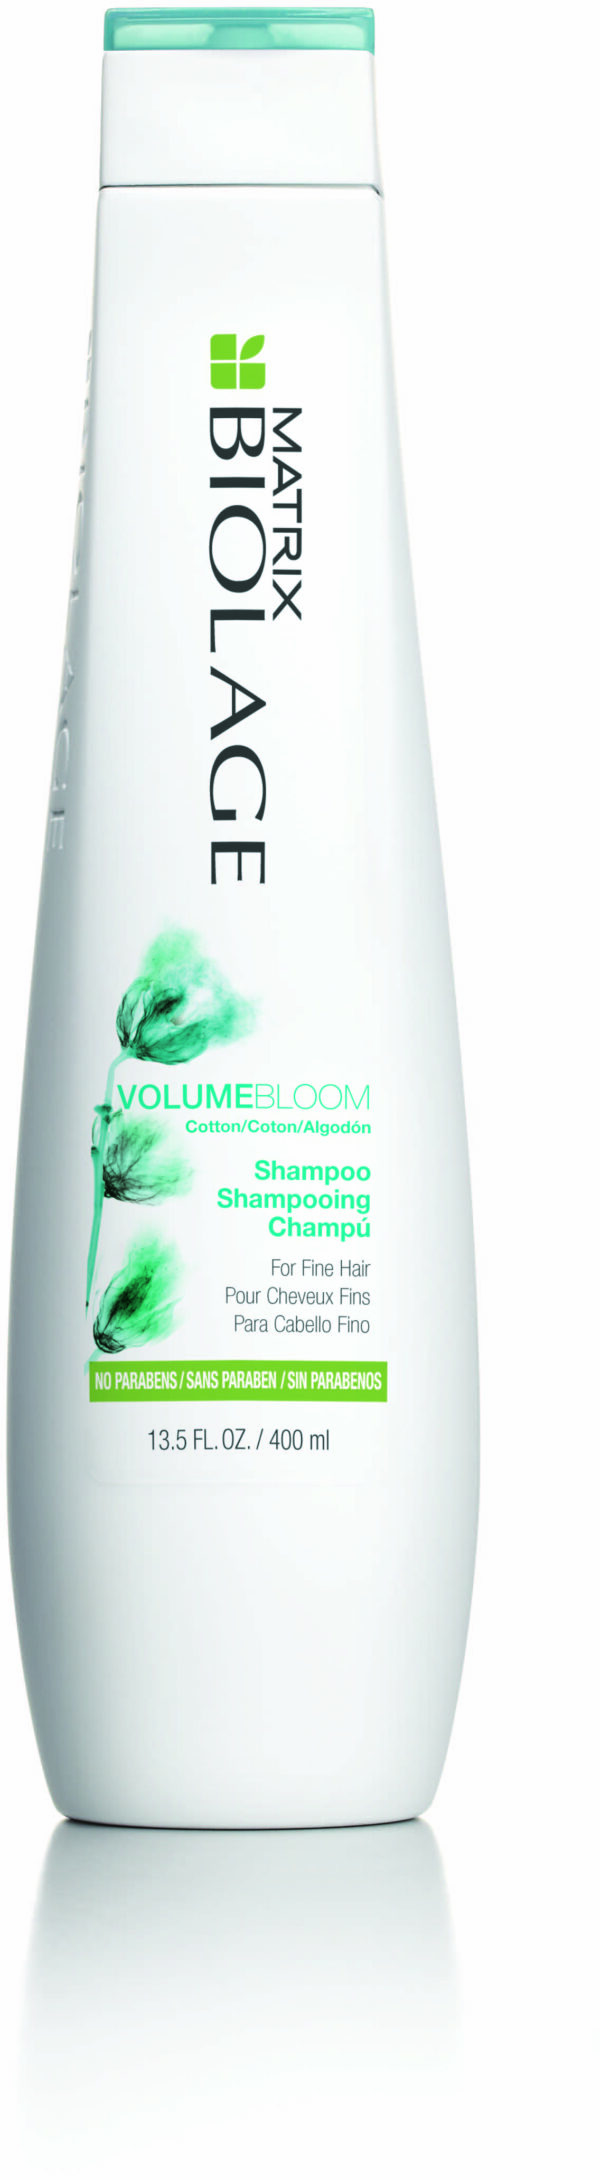 Biolage Volumebloom Shampoo 400ml